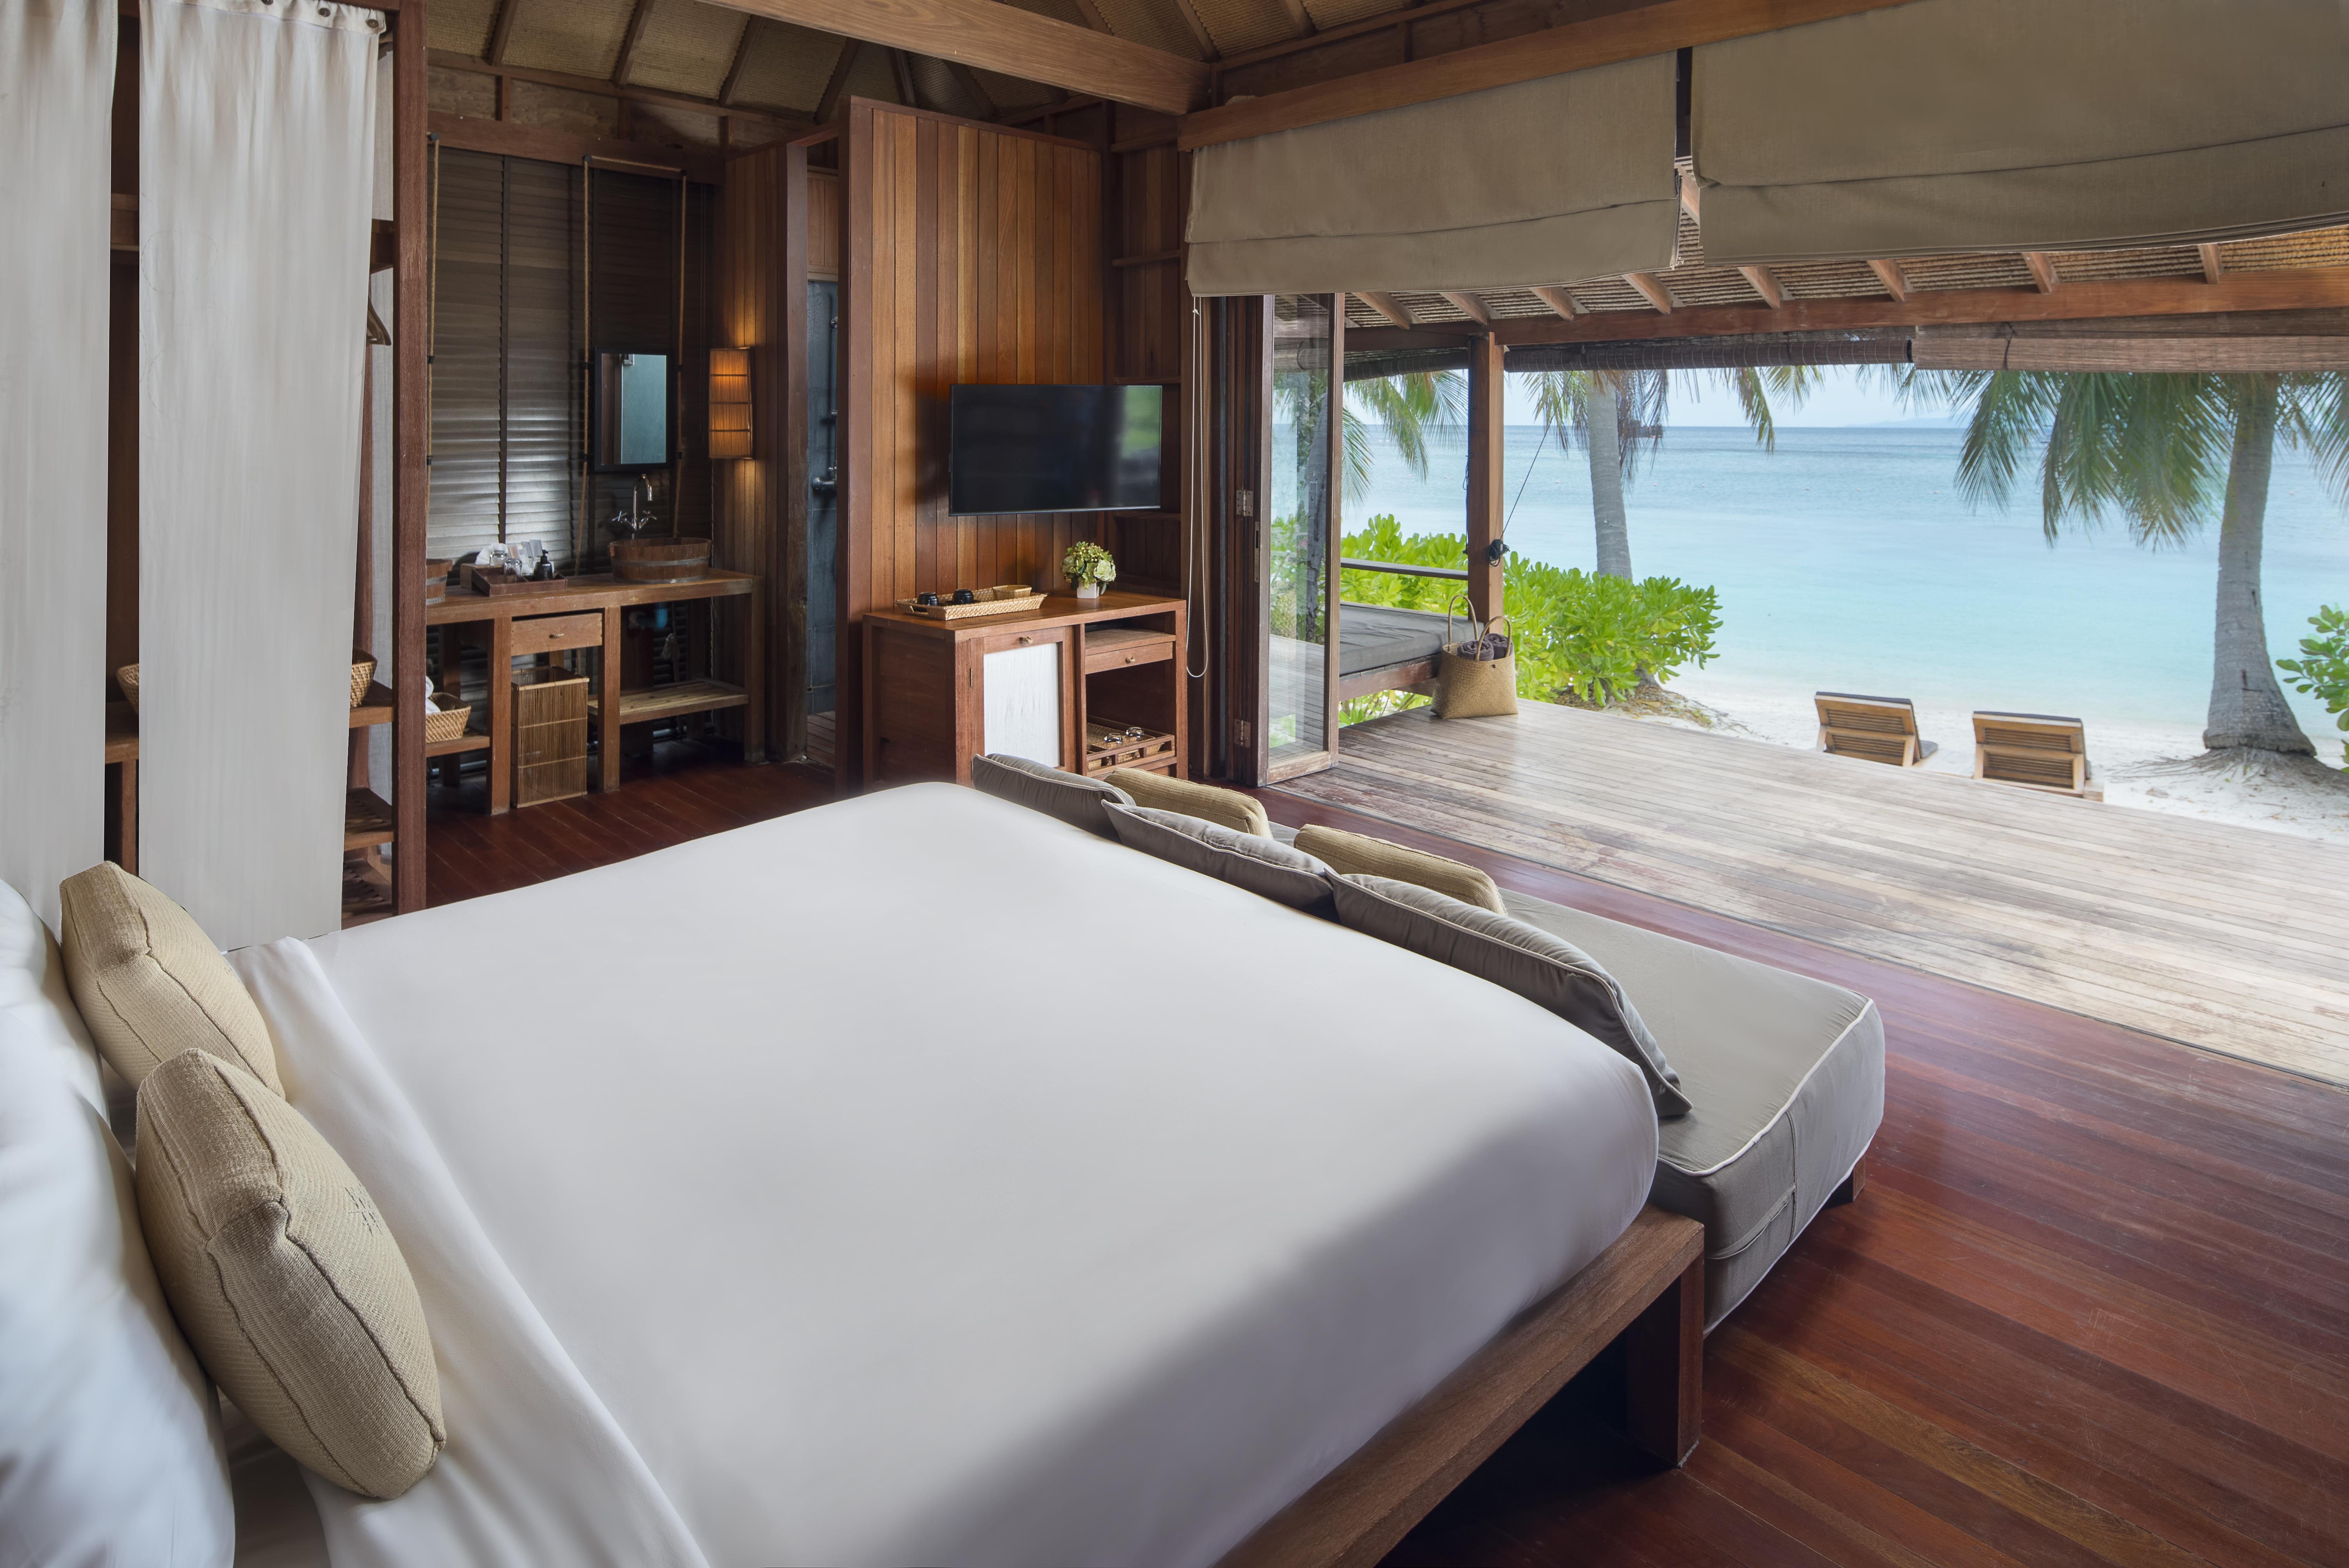 โรงแรม หาดเทียนบีชรีสอร์ท เกาะเต่า 4* (ไทย) - จาก 4338 THB | HOTELMIX